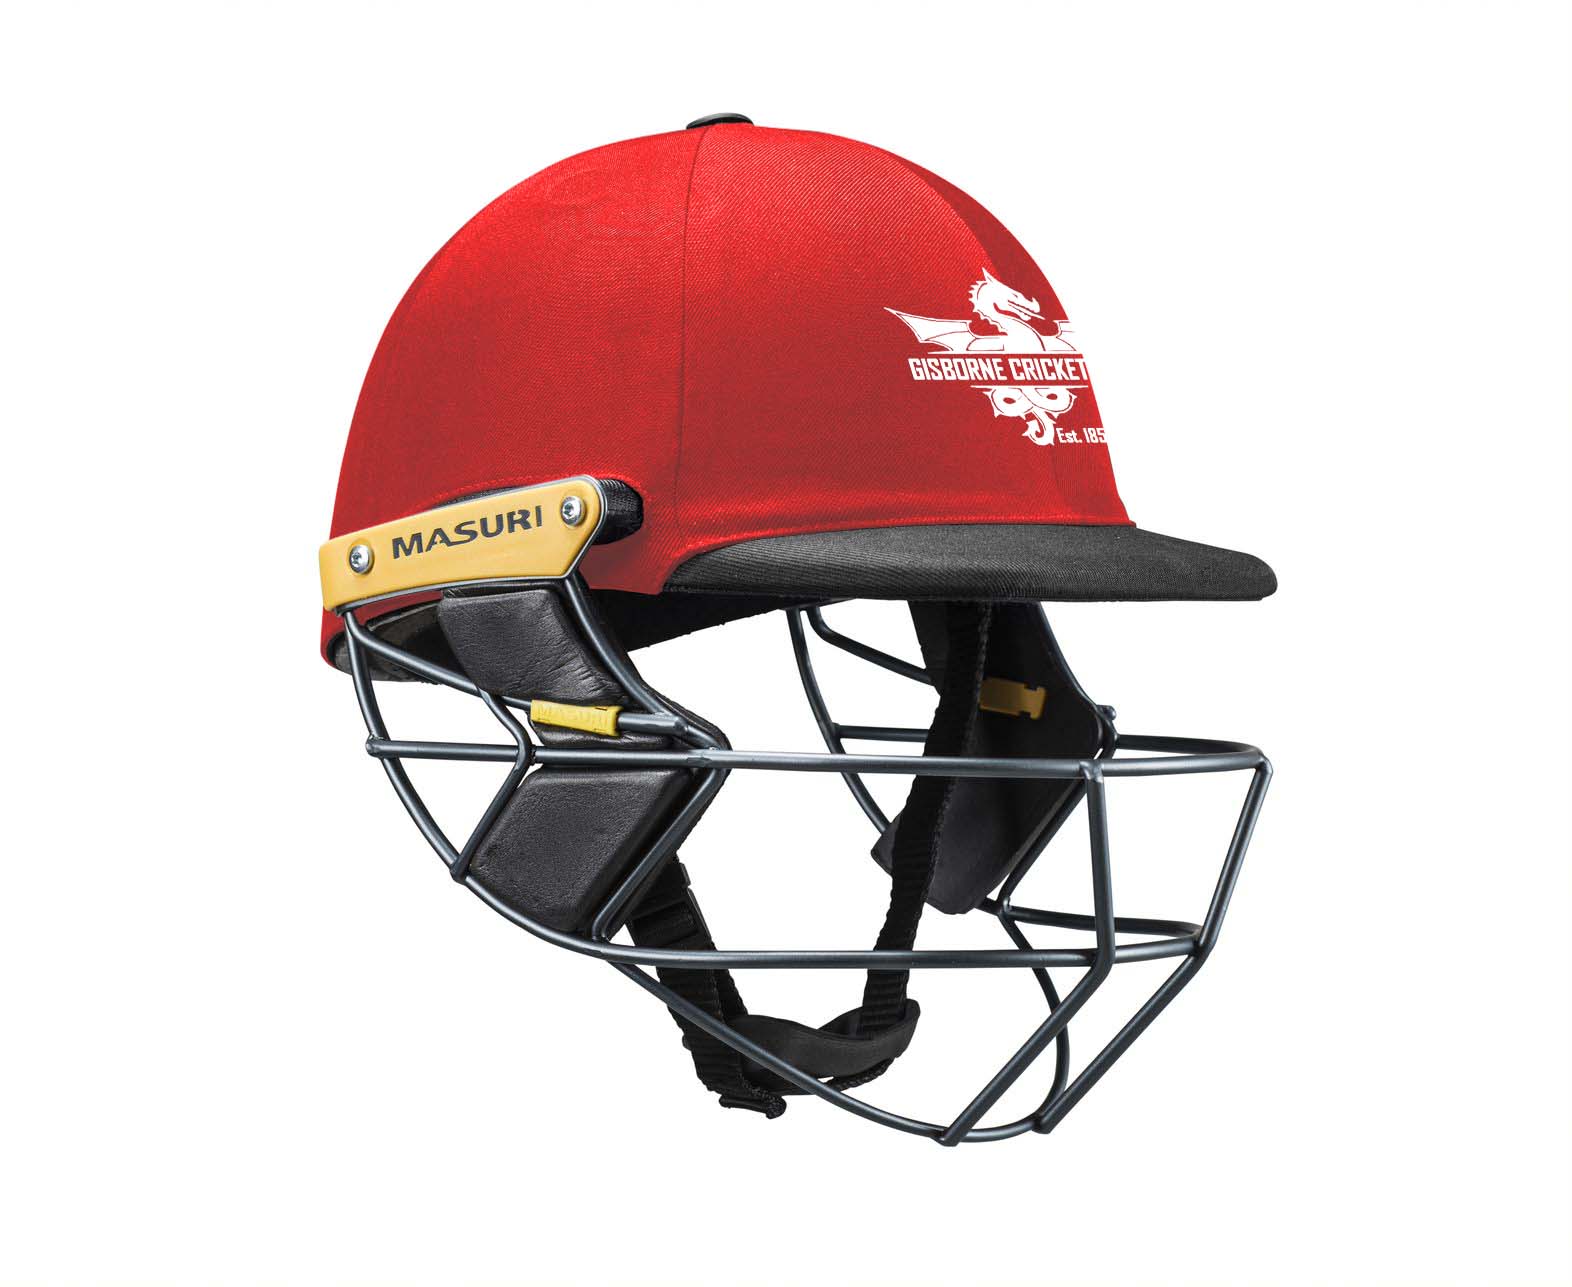 Masuri Club Helmet Gisborne Cricket Club Helmet